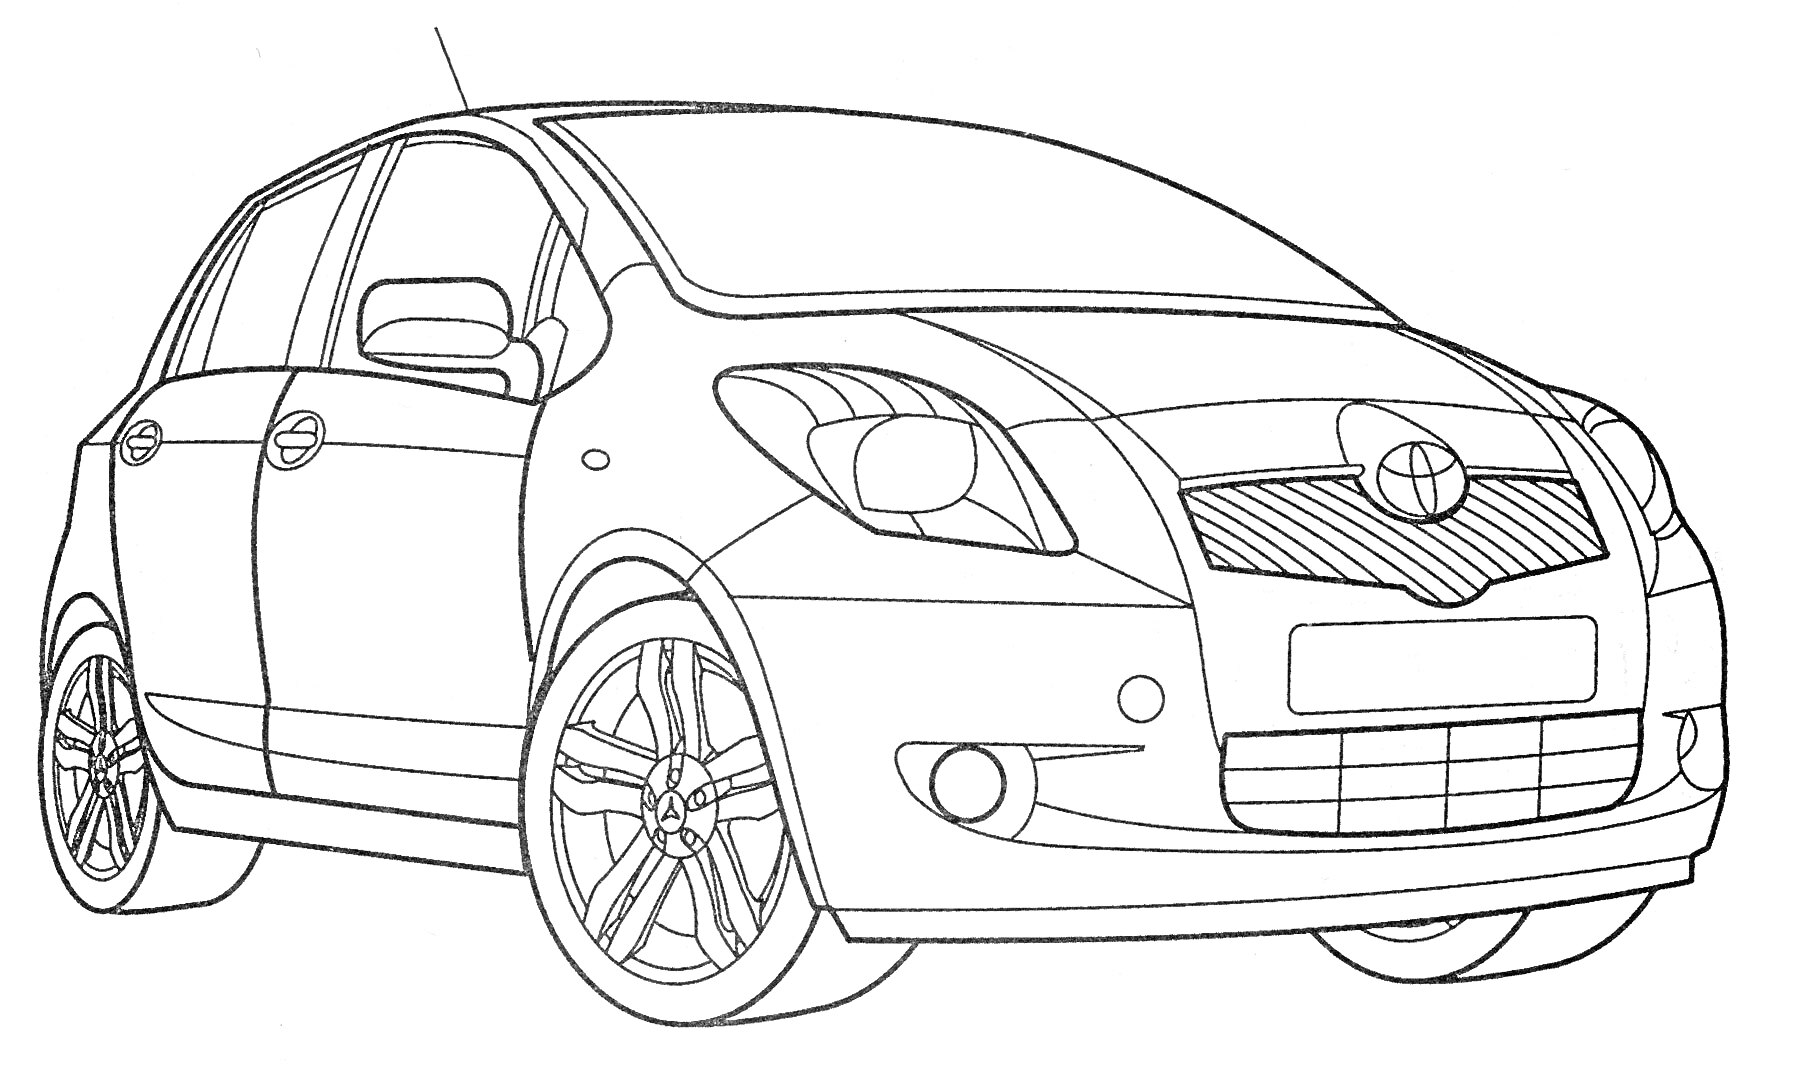 РаскраскаЛегковой автомобиль Тойота с четырьмя дверями, передними и задними фарами, боковыми зеркалами, передней решеткой, шинами и антеной